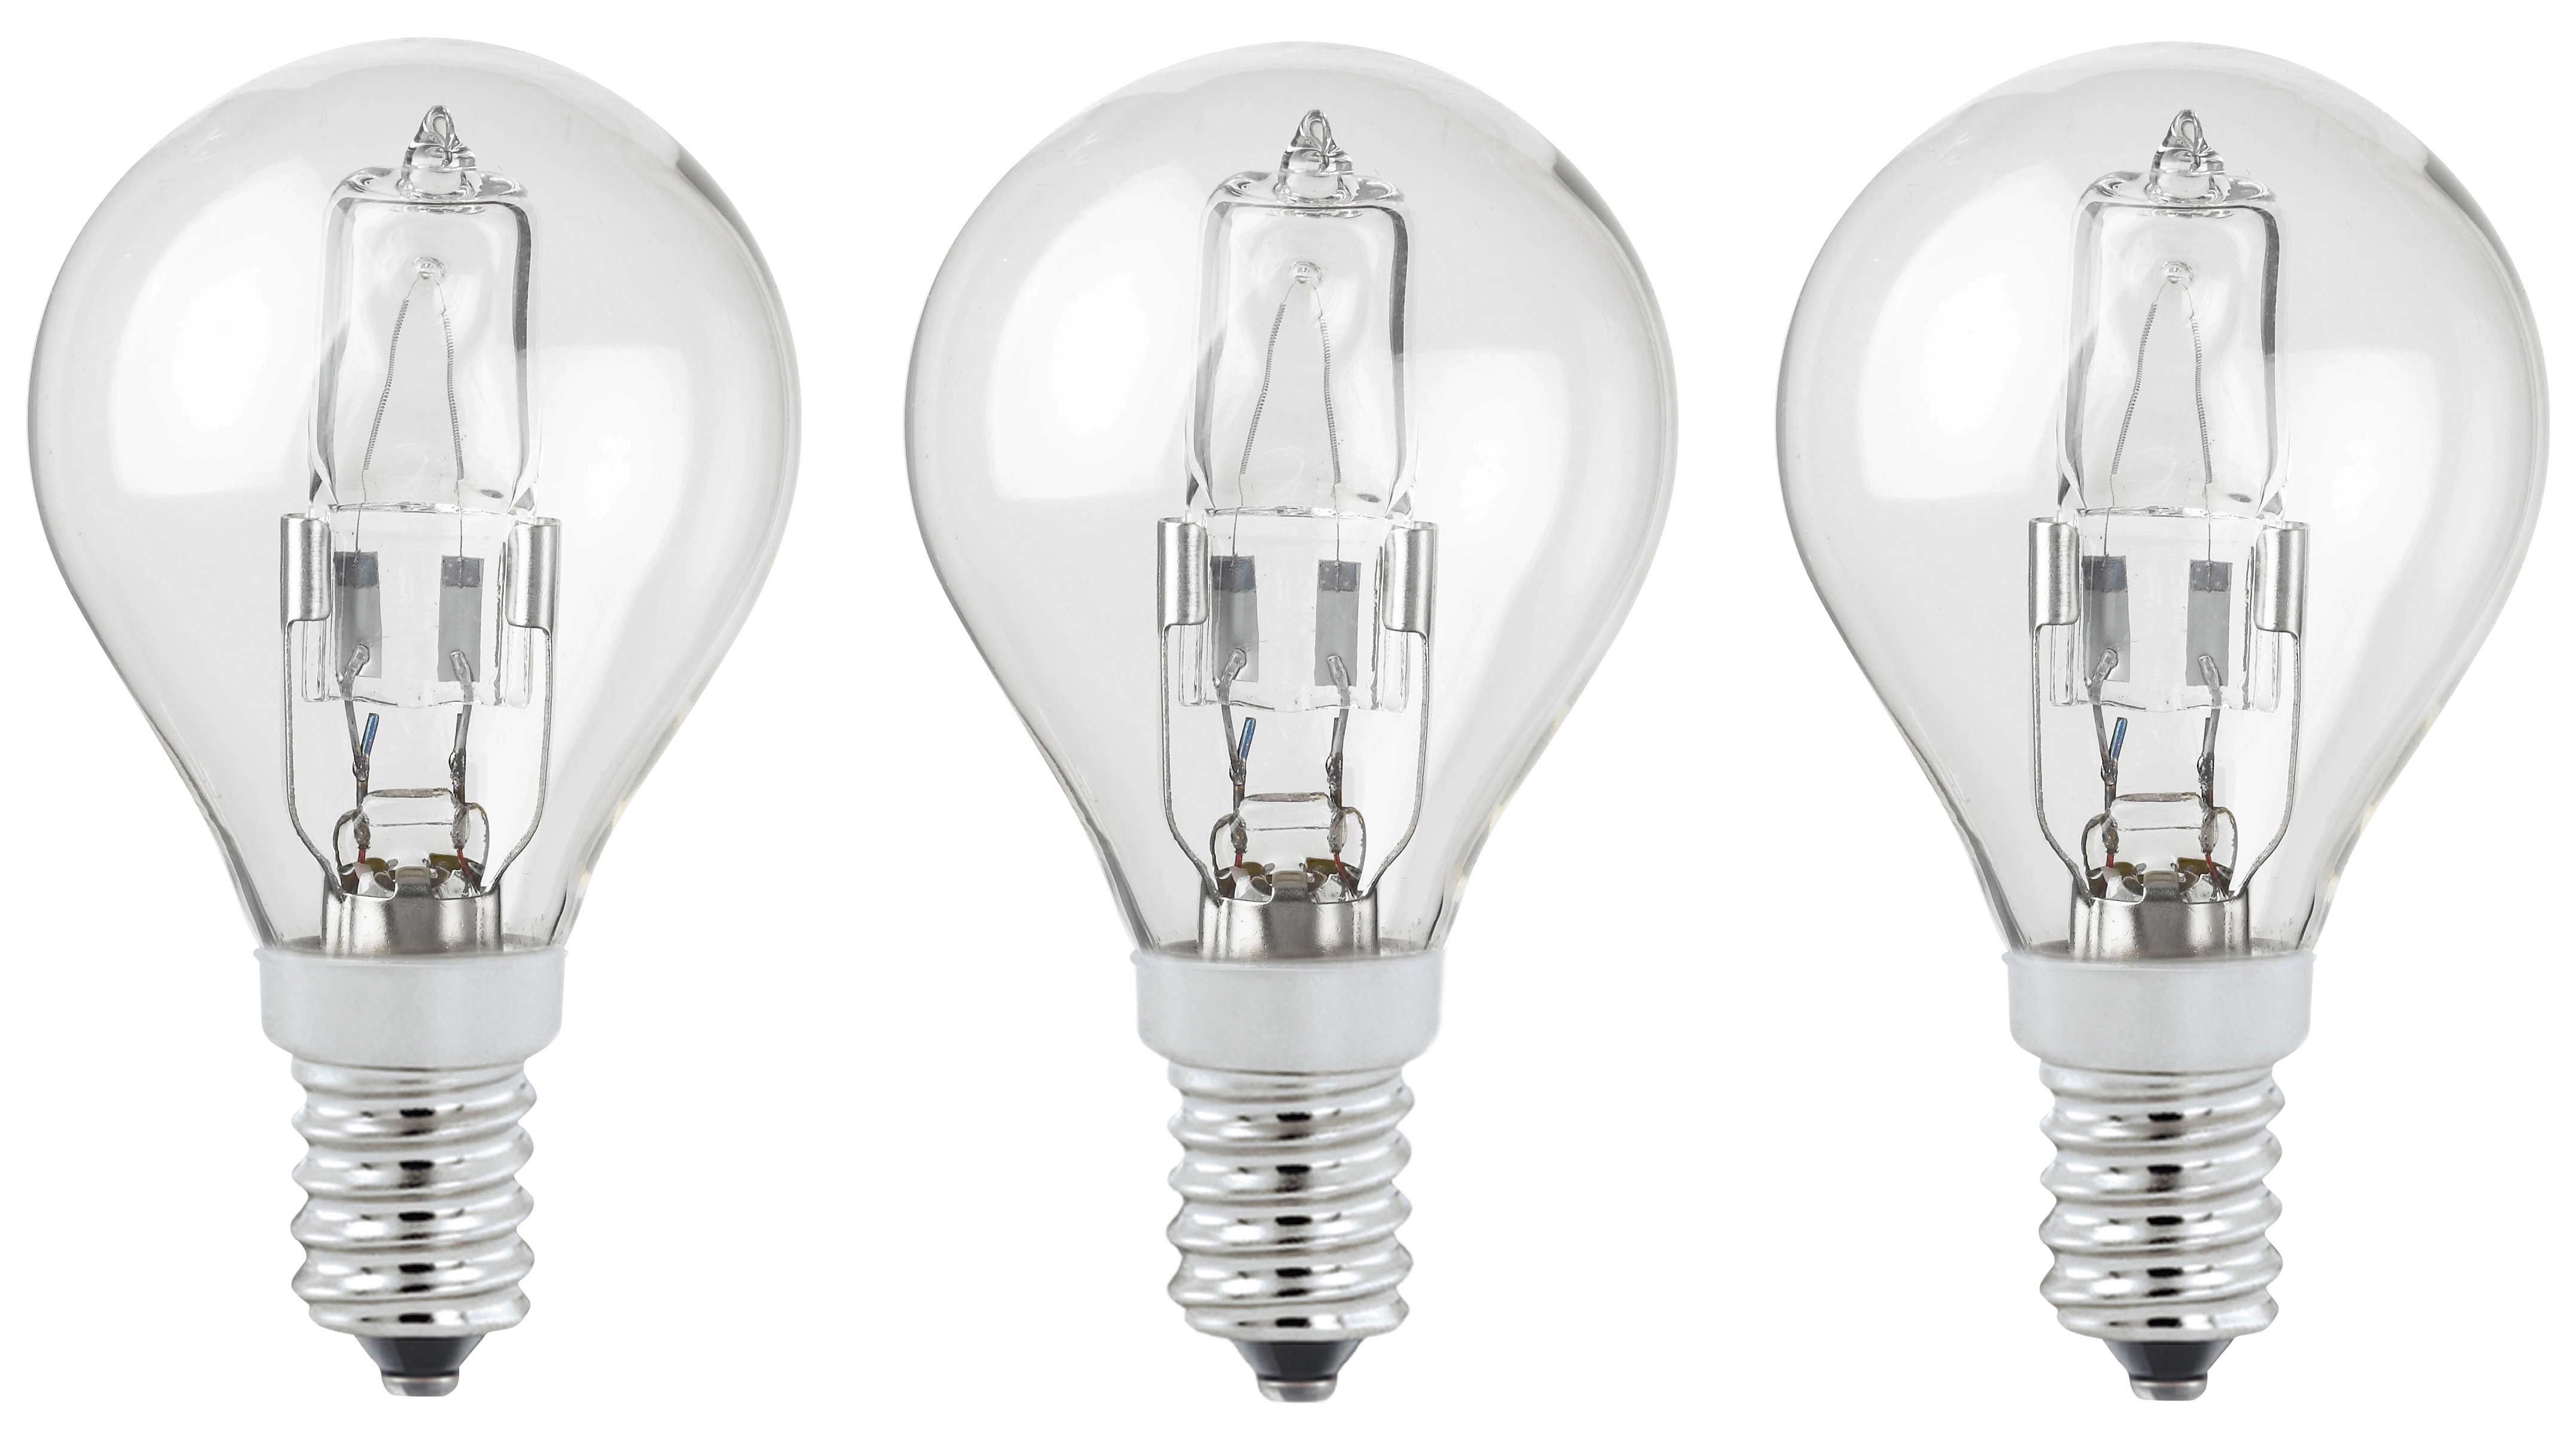 Halogenlampen Online Shop – Leuchten und Beleuchtung günstig kaufen